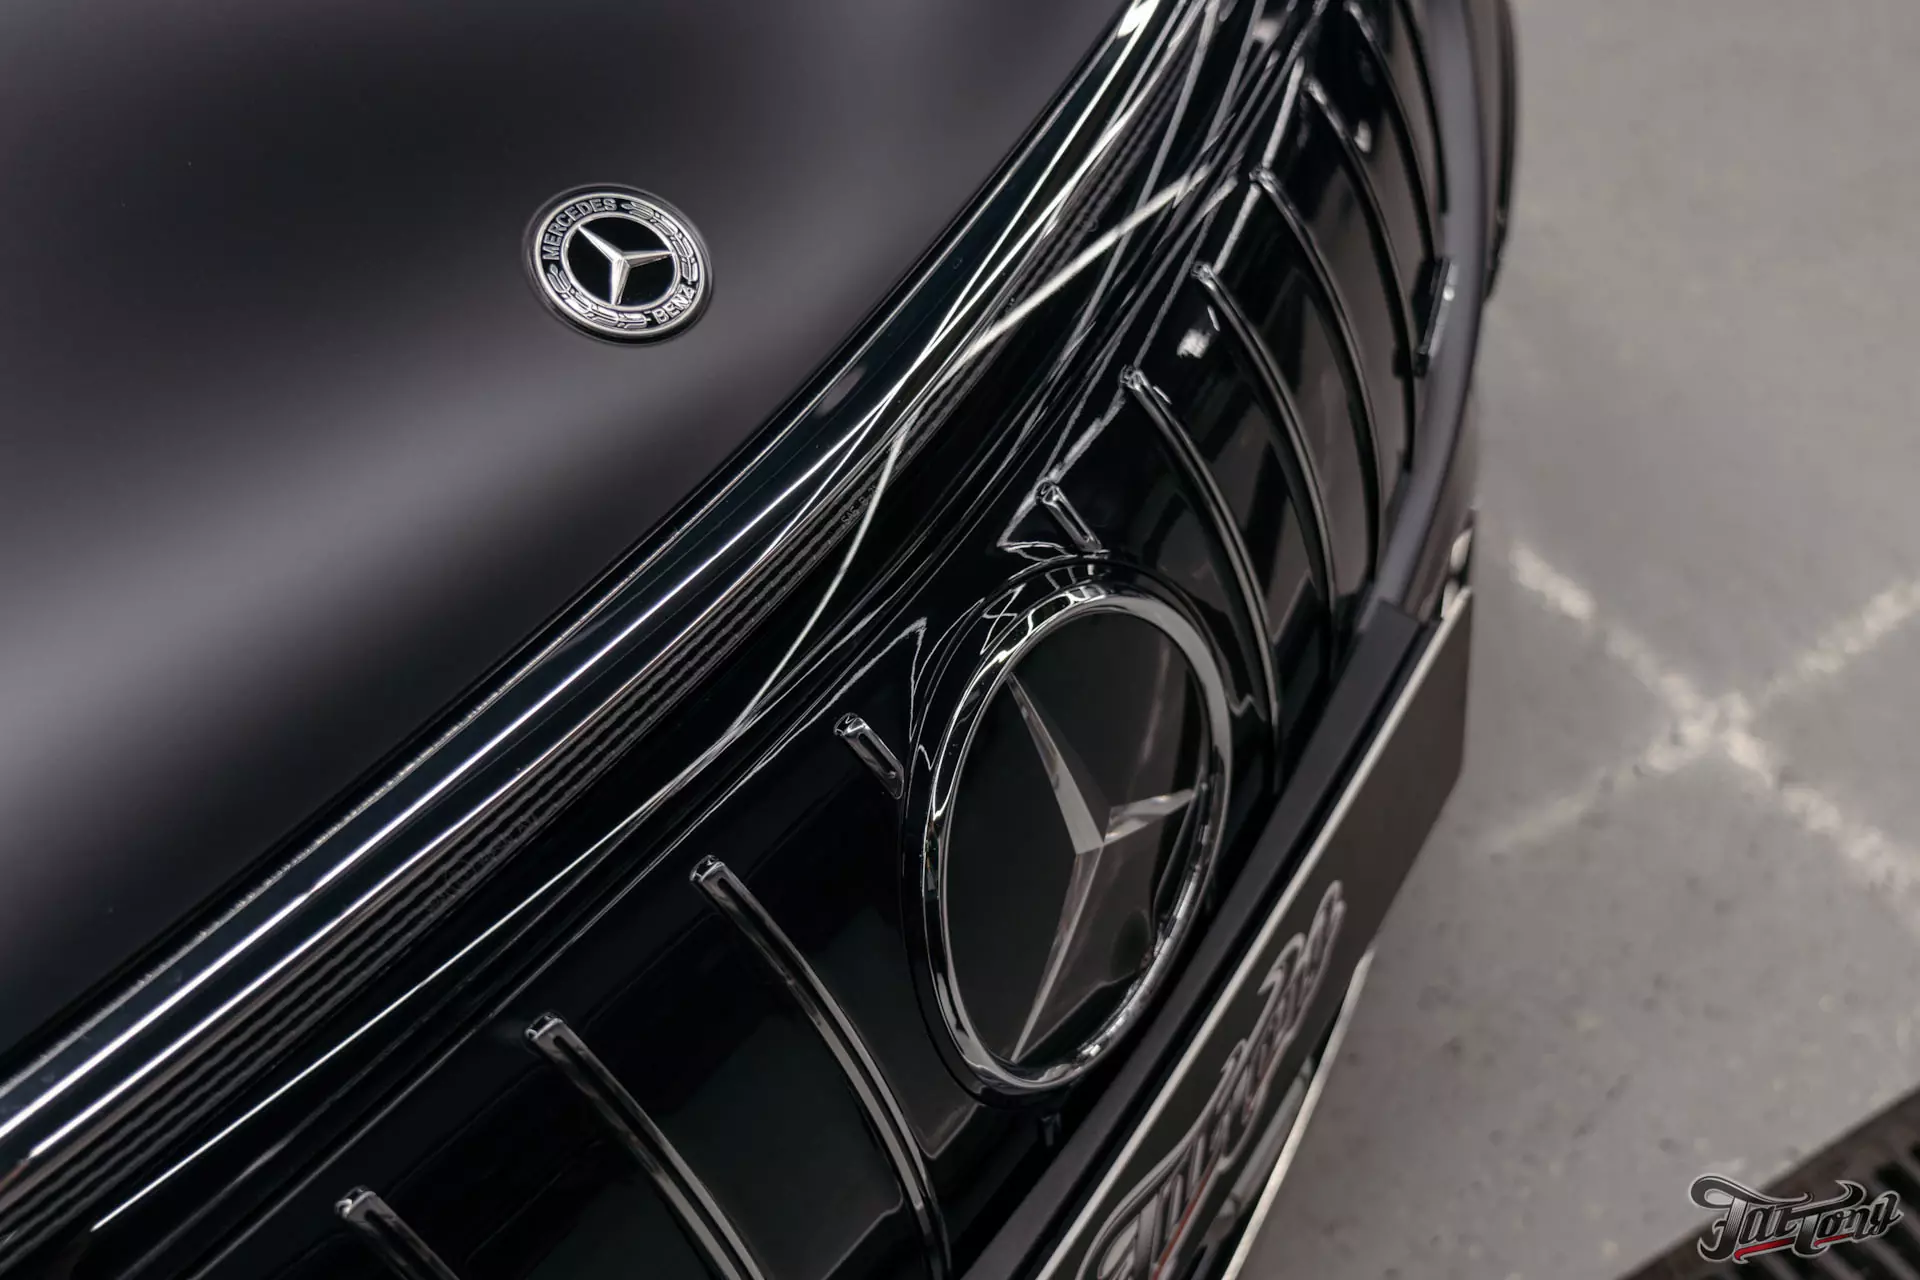 Оклейка Mercedes EQS 53 AMG в матовый полиуретан. Защита карбона и монитора пленкой. Детейлинг